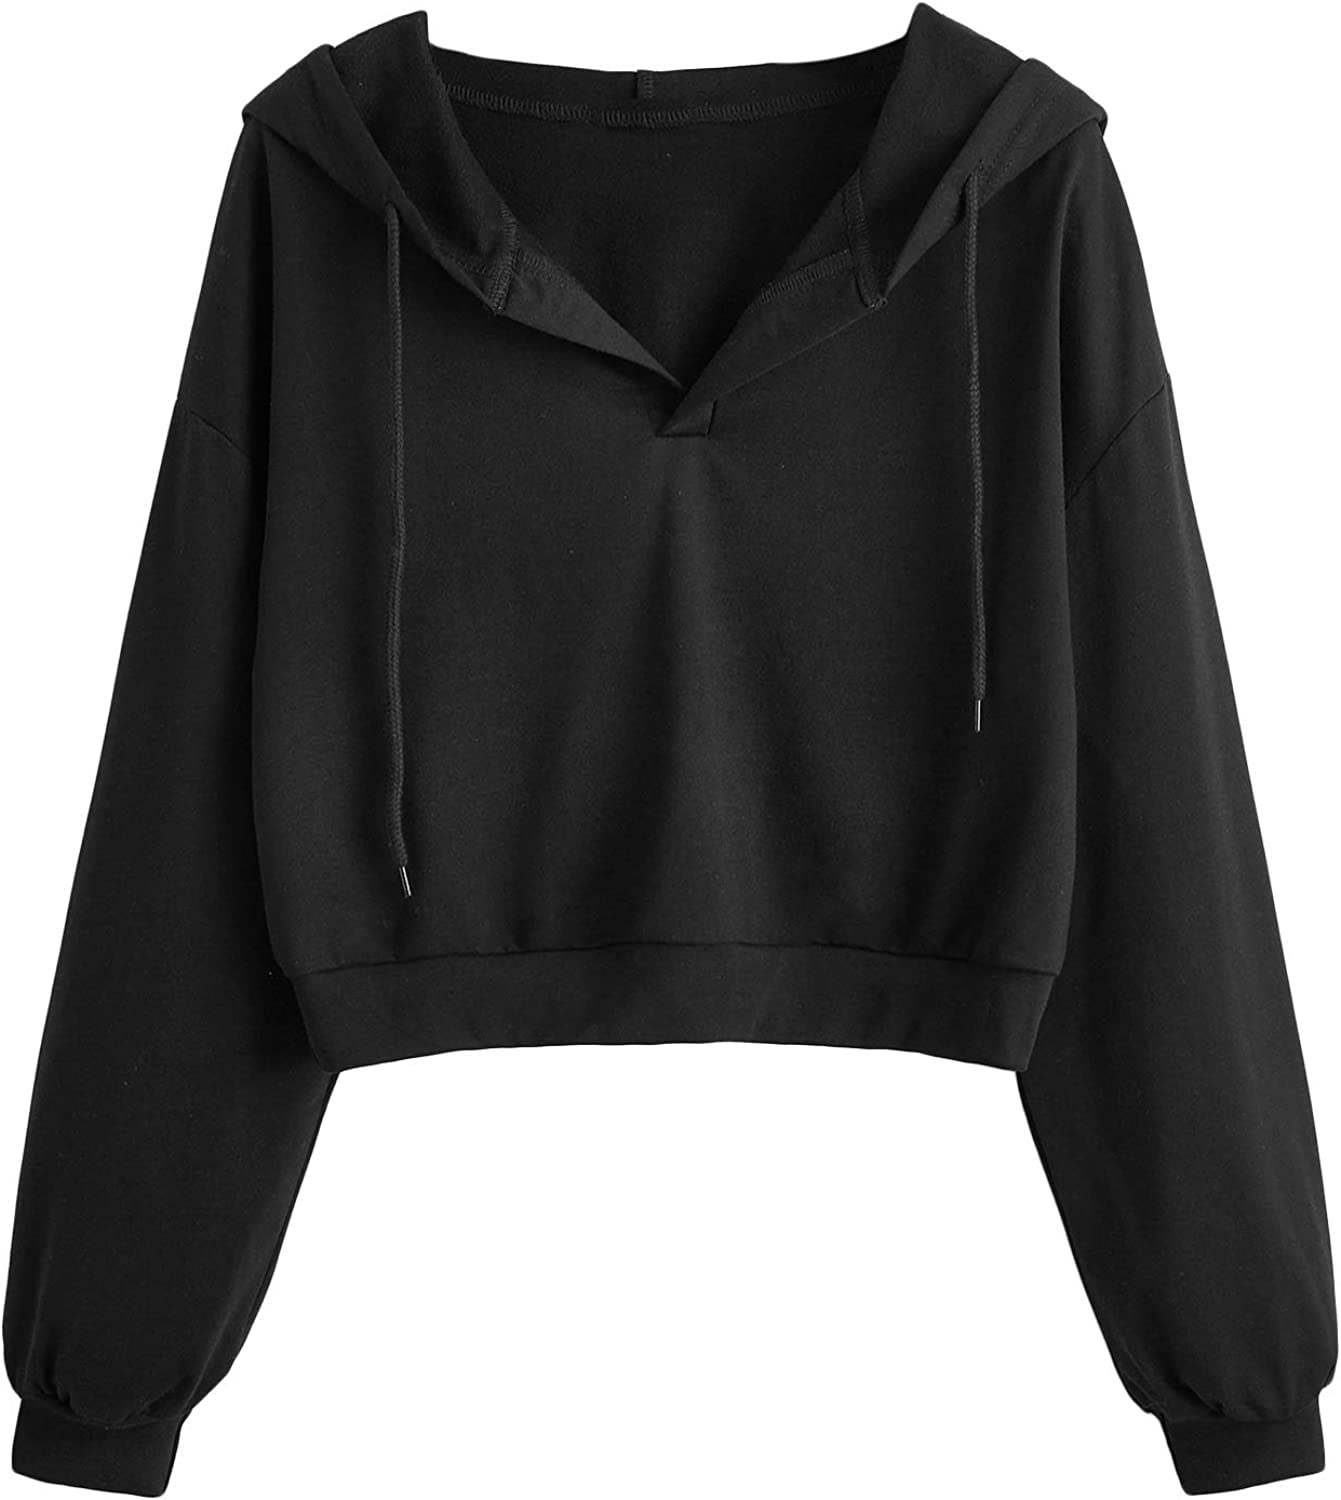 MAGCOMSEN Women's Hooded Sweatshirt Half Zip Fleece Pullover